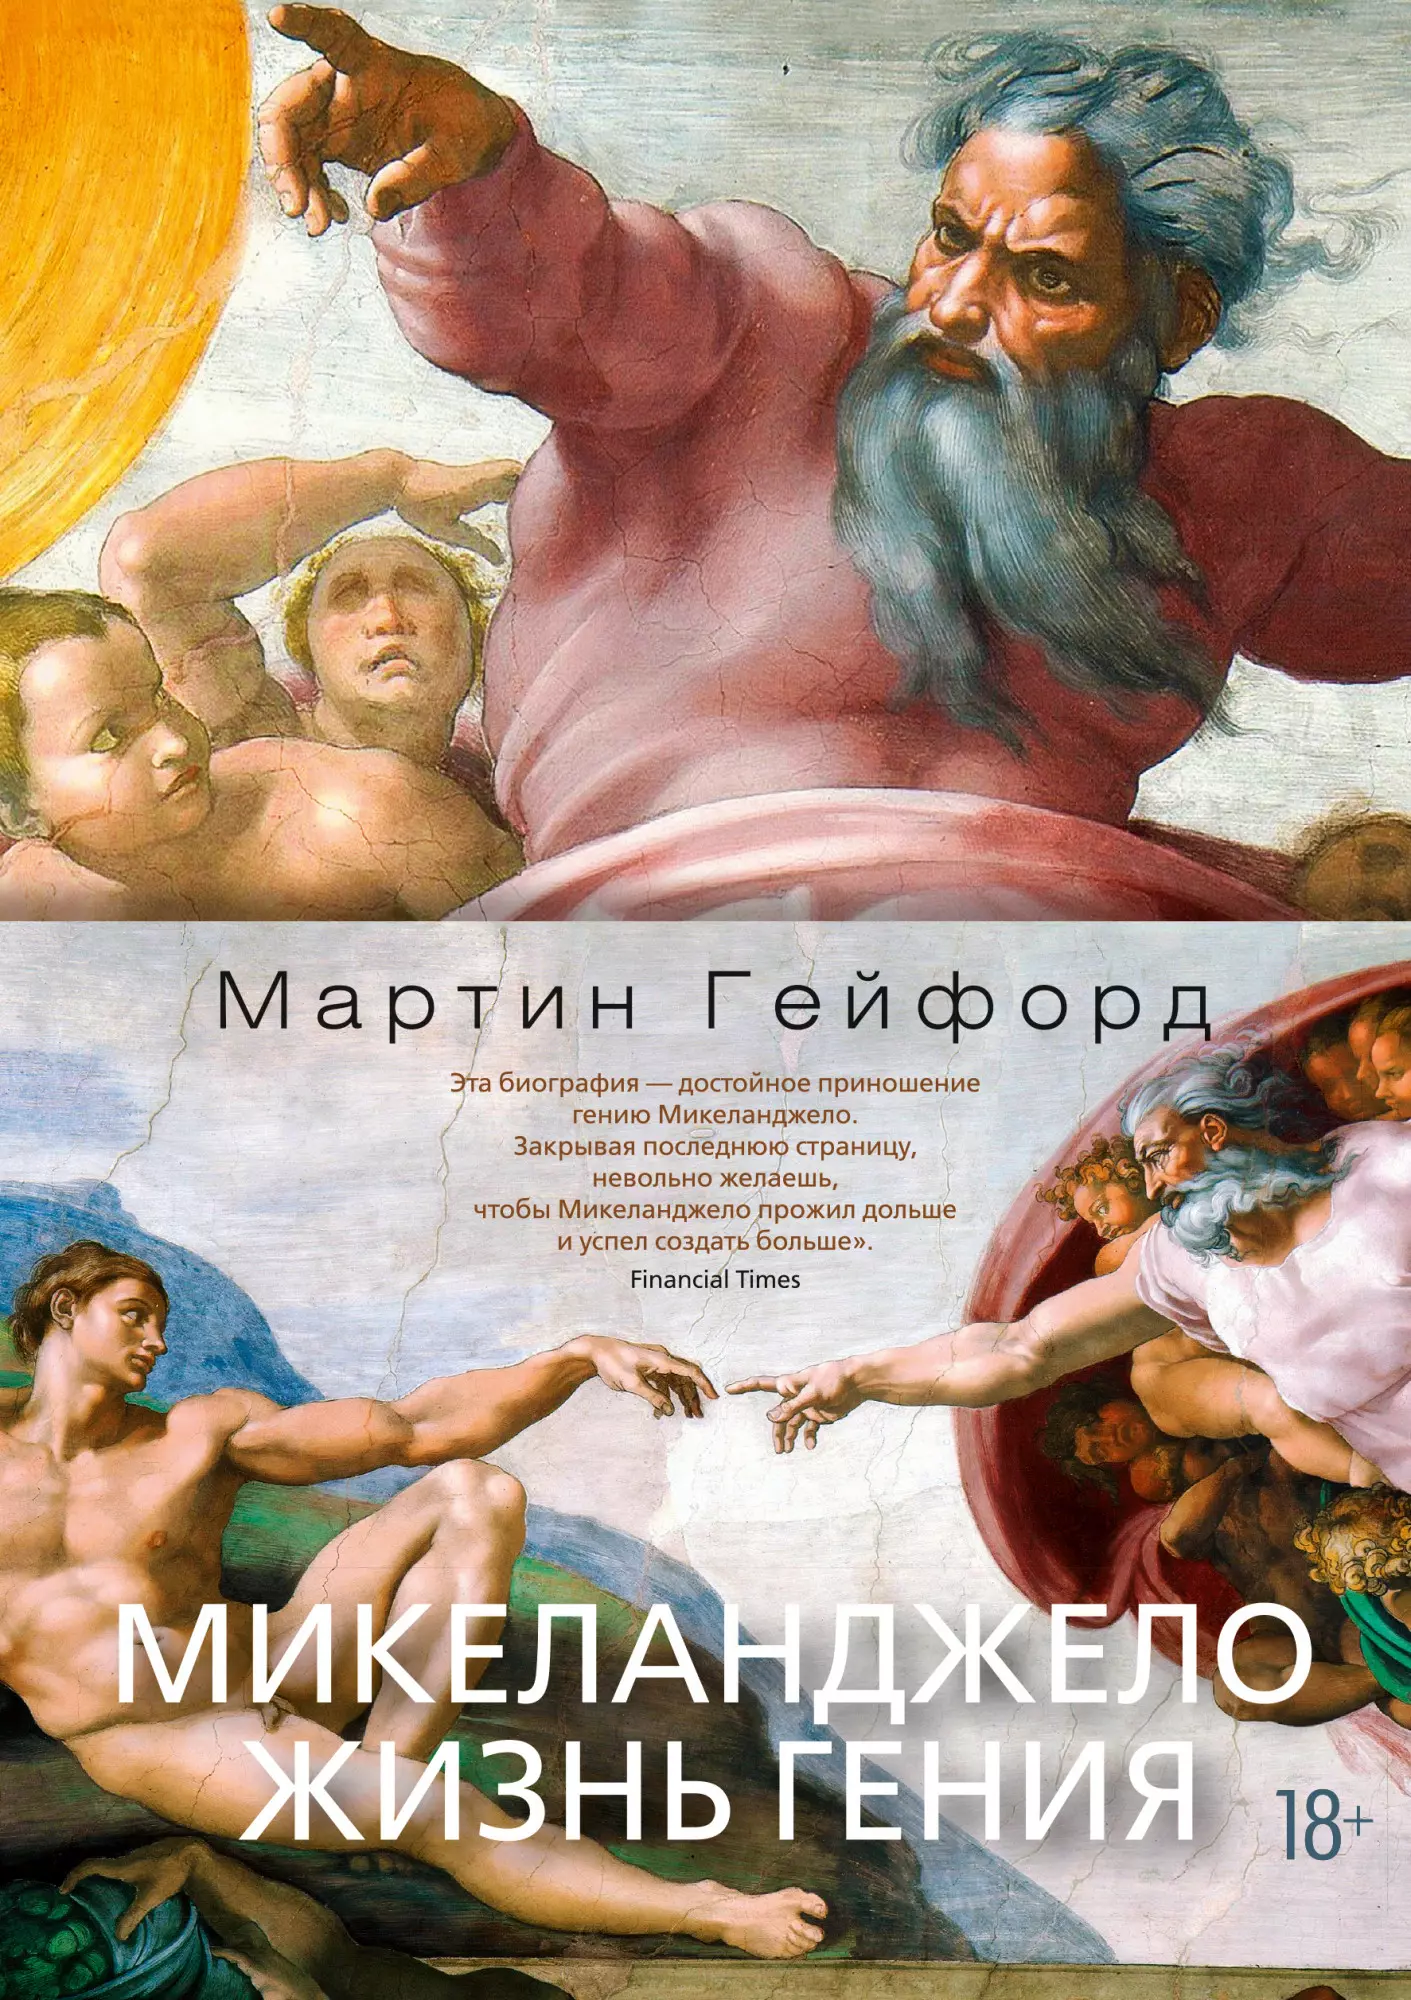 Гейфорд Мартин Микеланджело. Жизнь гения